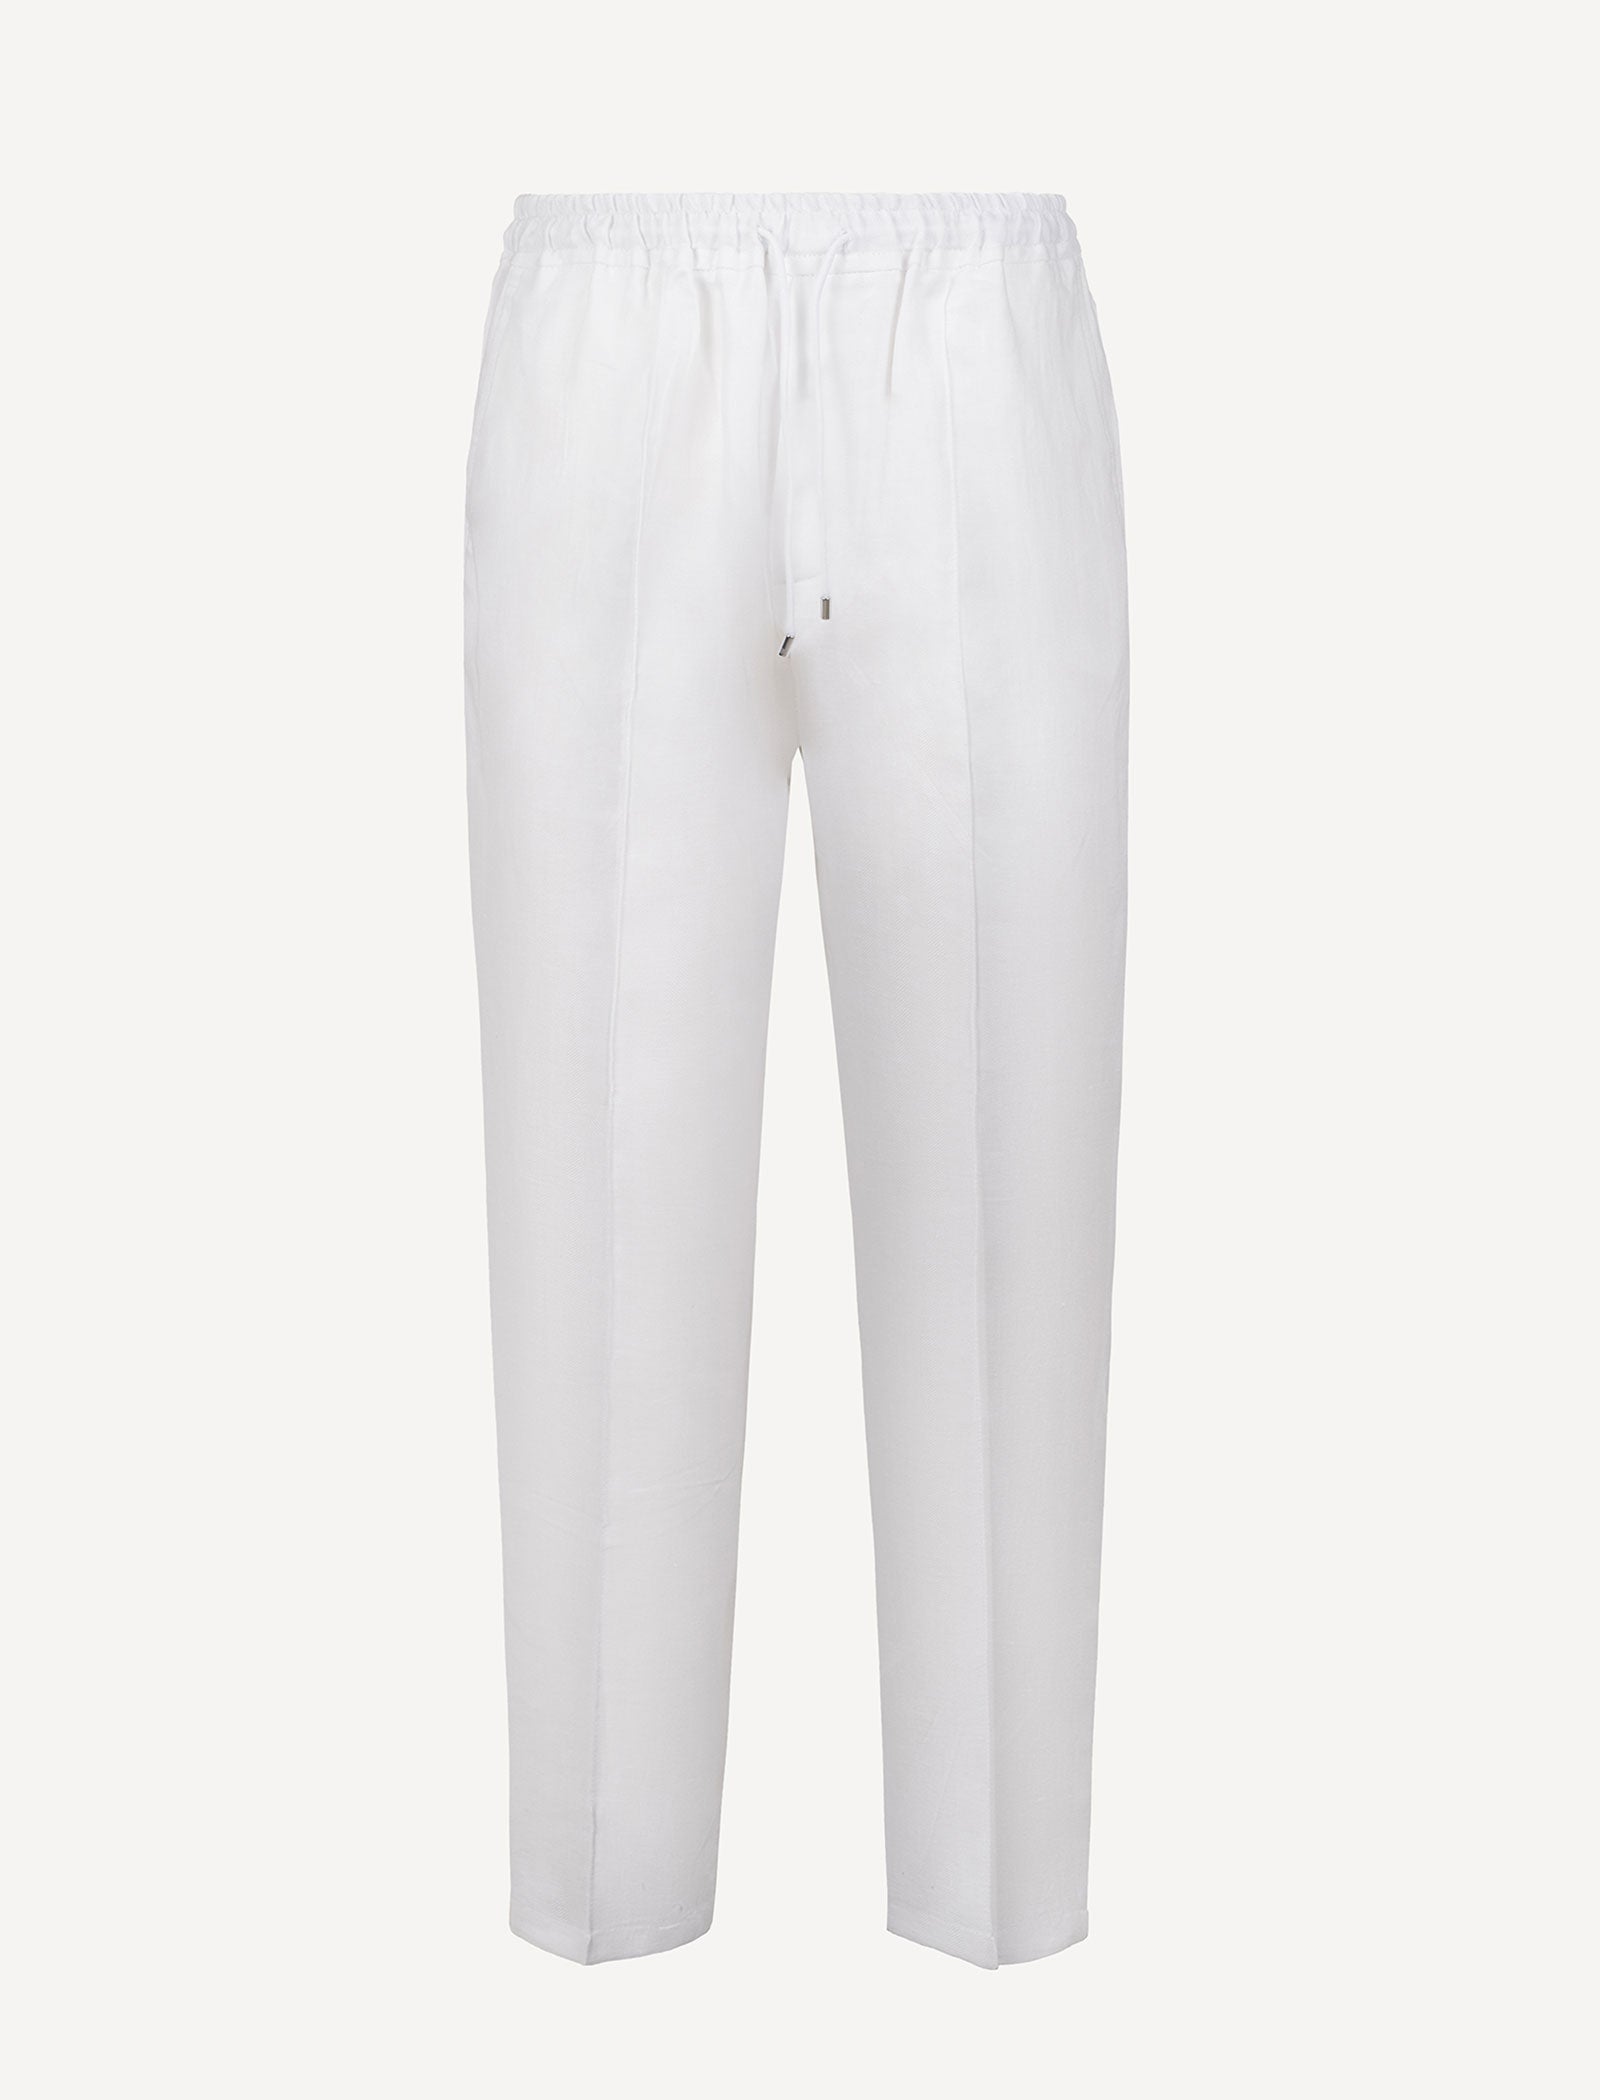 Malta Linen Trousers – 100% Capri